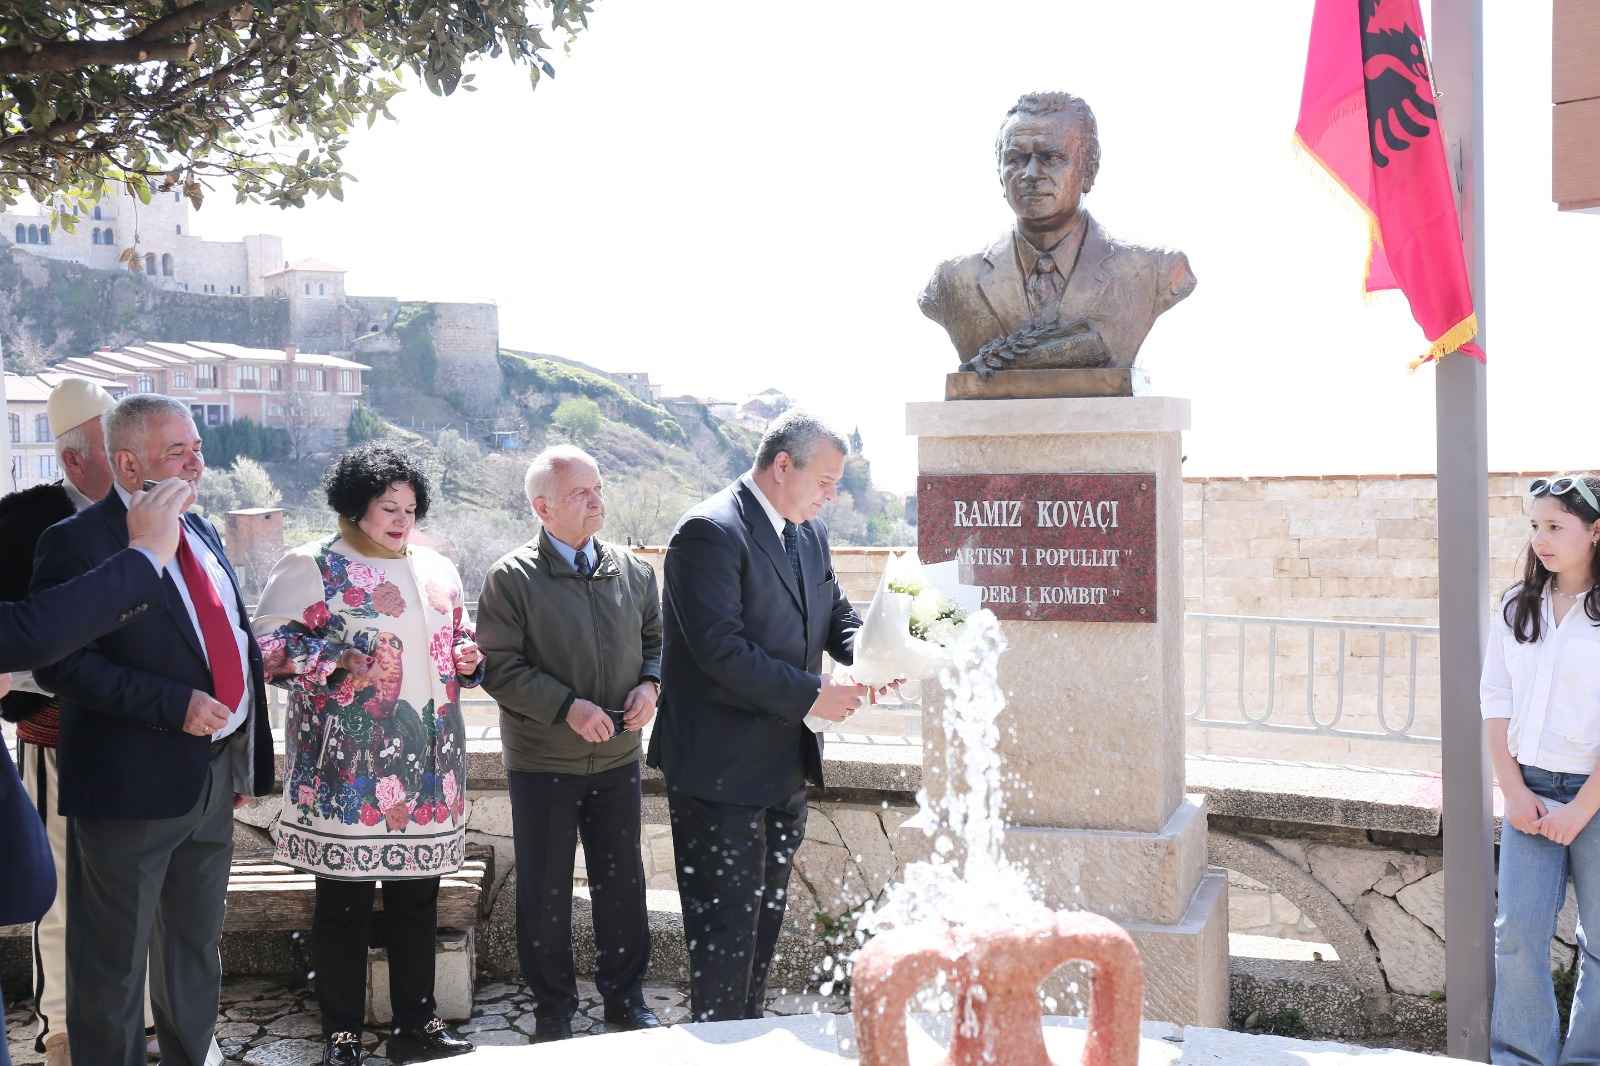 Посланик Киров бе специален гост на откриването на бюст-паметника на баритона Рамиз Ковачи в гр. Круя